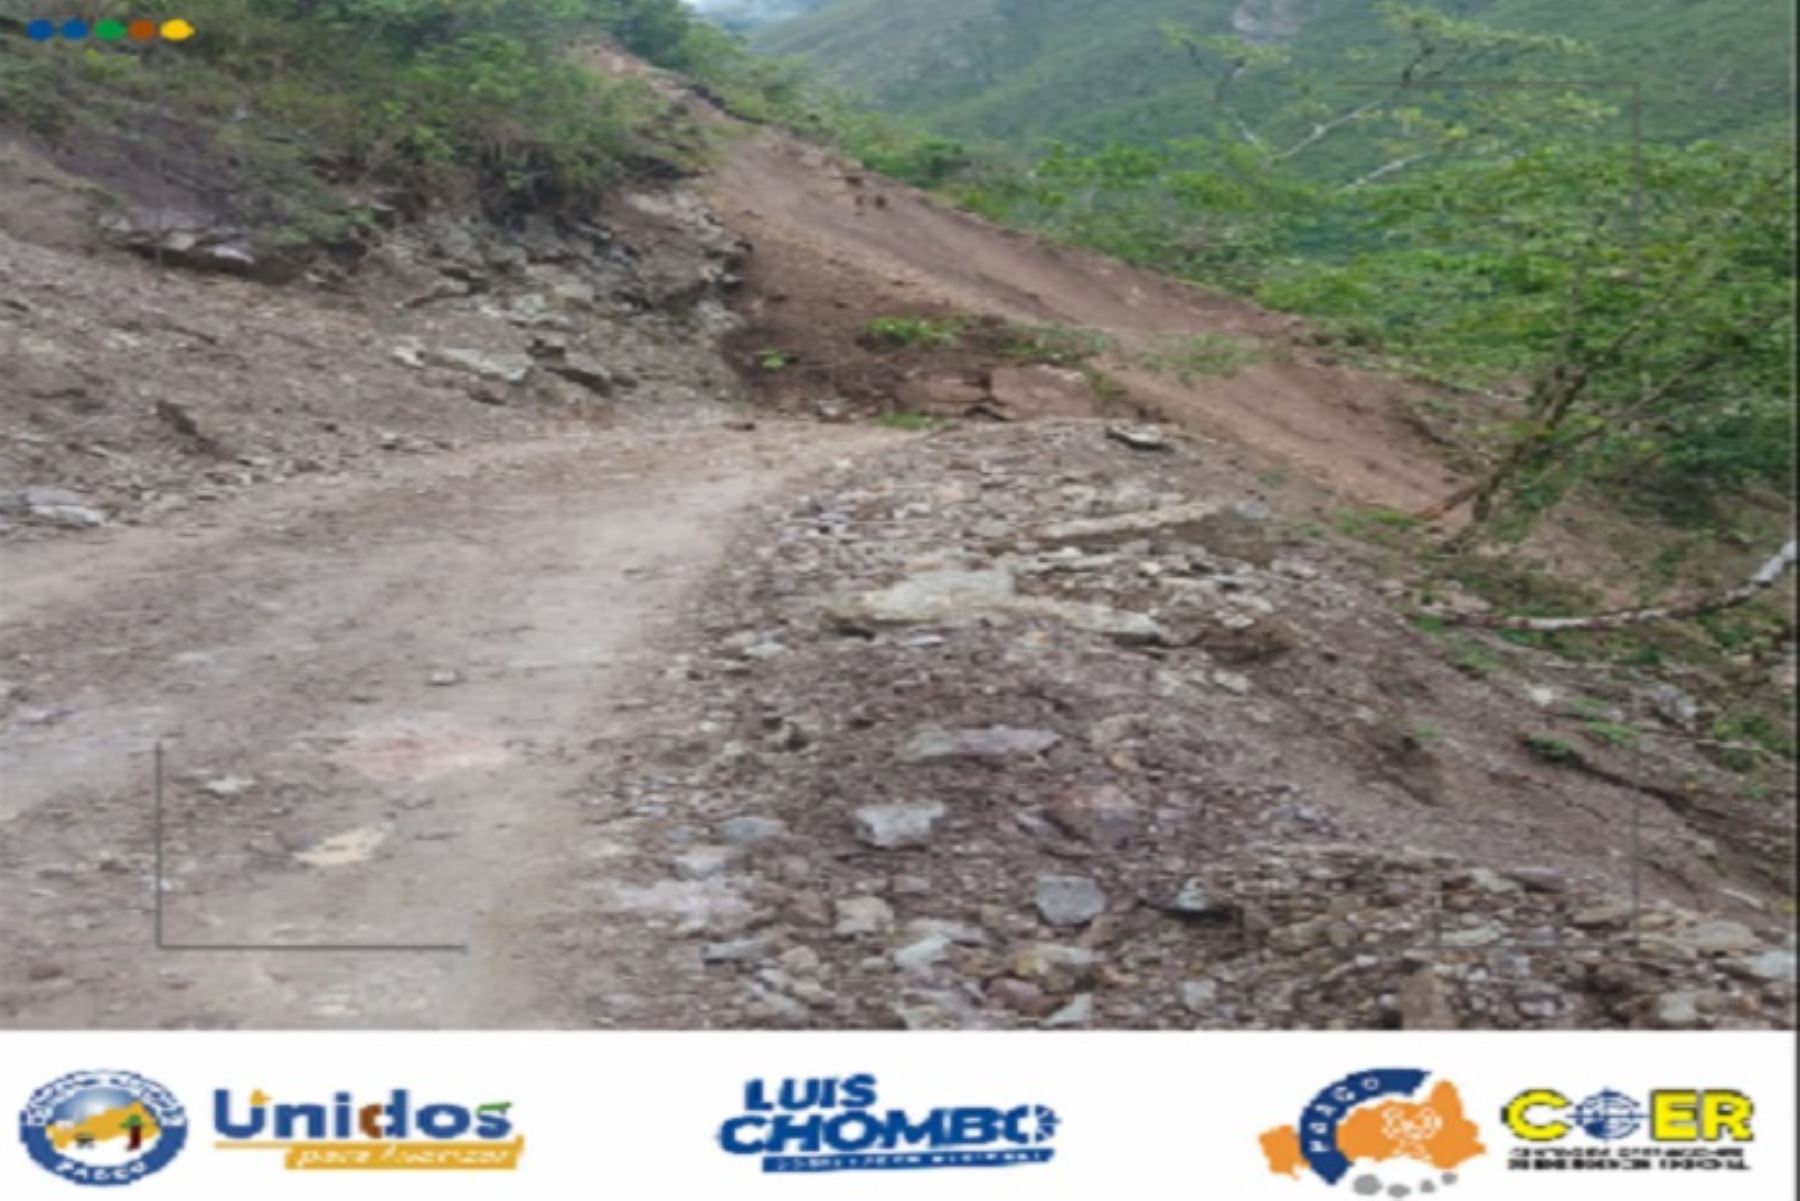 Otro deslizamiento de tierra dañó 70 metros lineales de la trocha carrozable en el sector San Miguel, también en el distrito de Pozuzo.